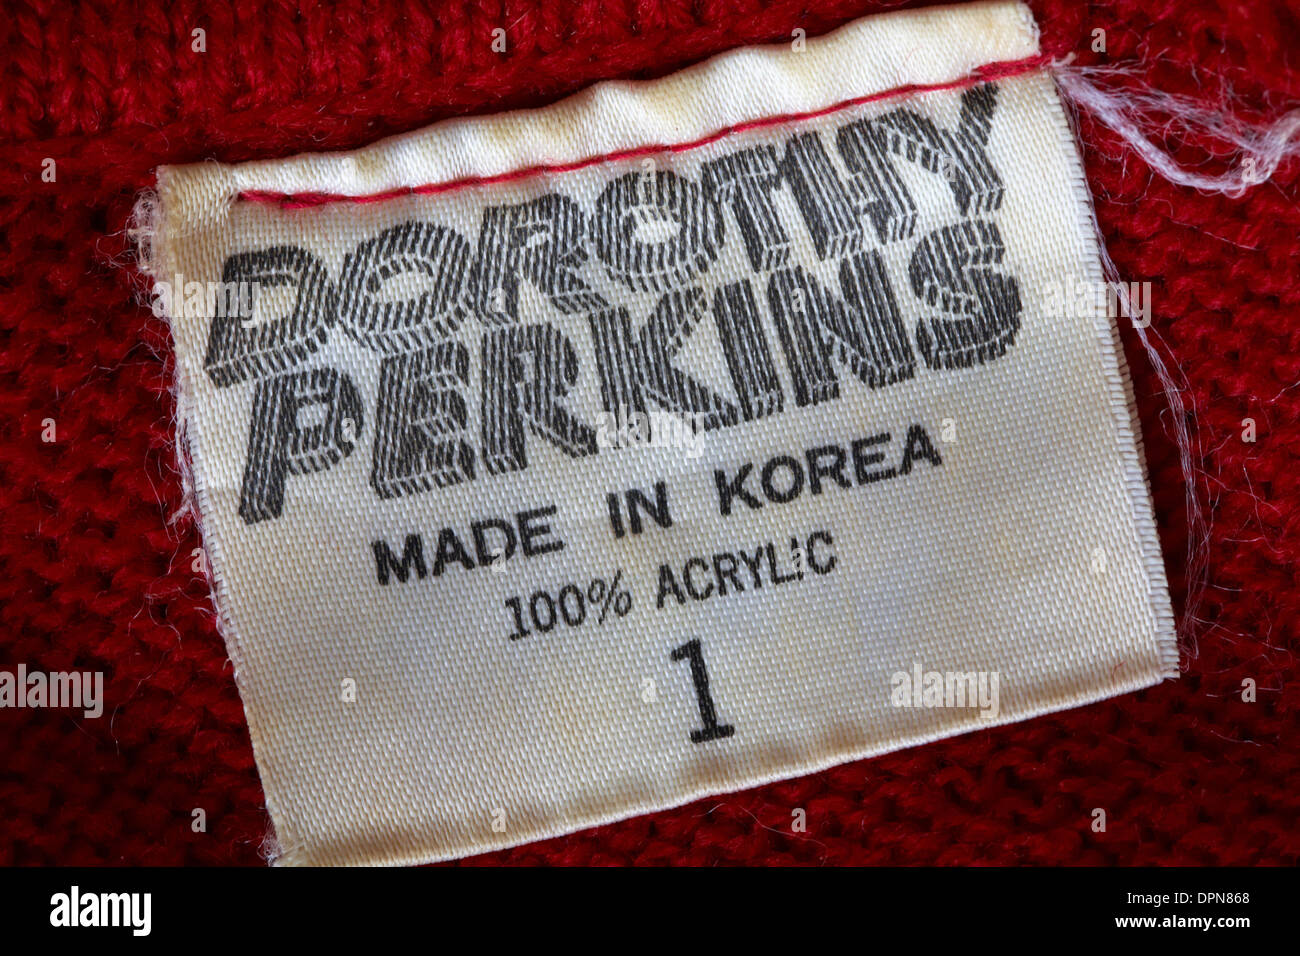 Dans l'étiquette vêtement - Dorothy Perkins fait en Corée 100 % acrylique -  vendues au Royaume-Uni Royaume-Uni, Grande Bretagne Photo Stock - Alamy